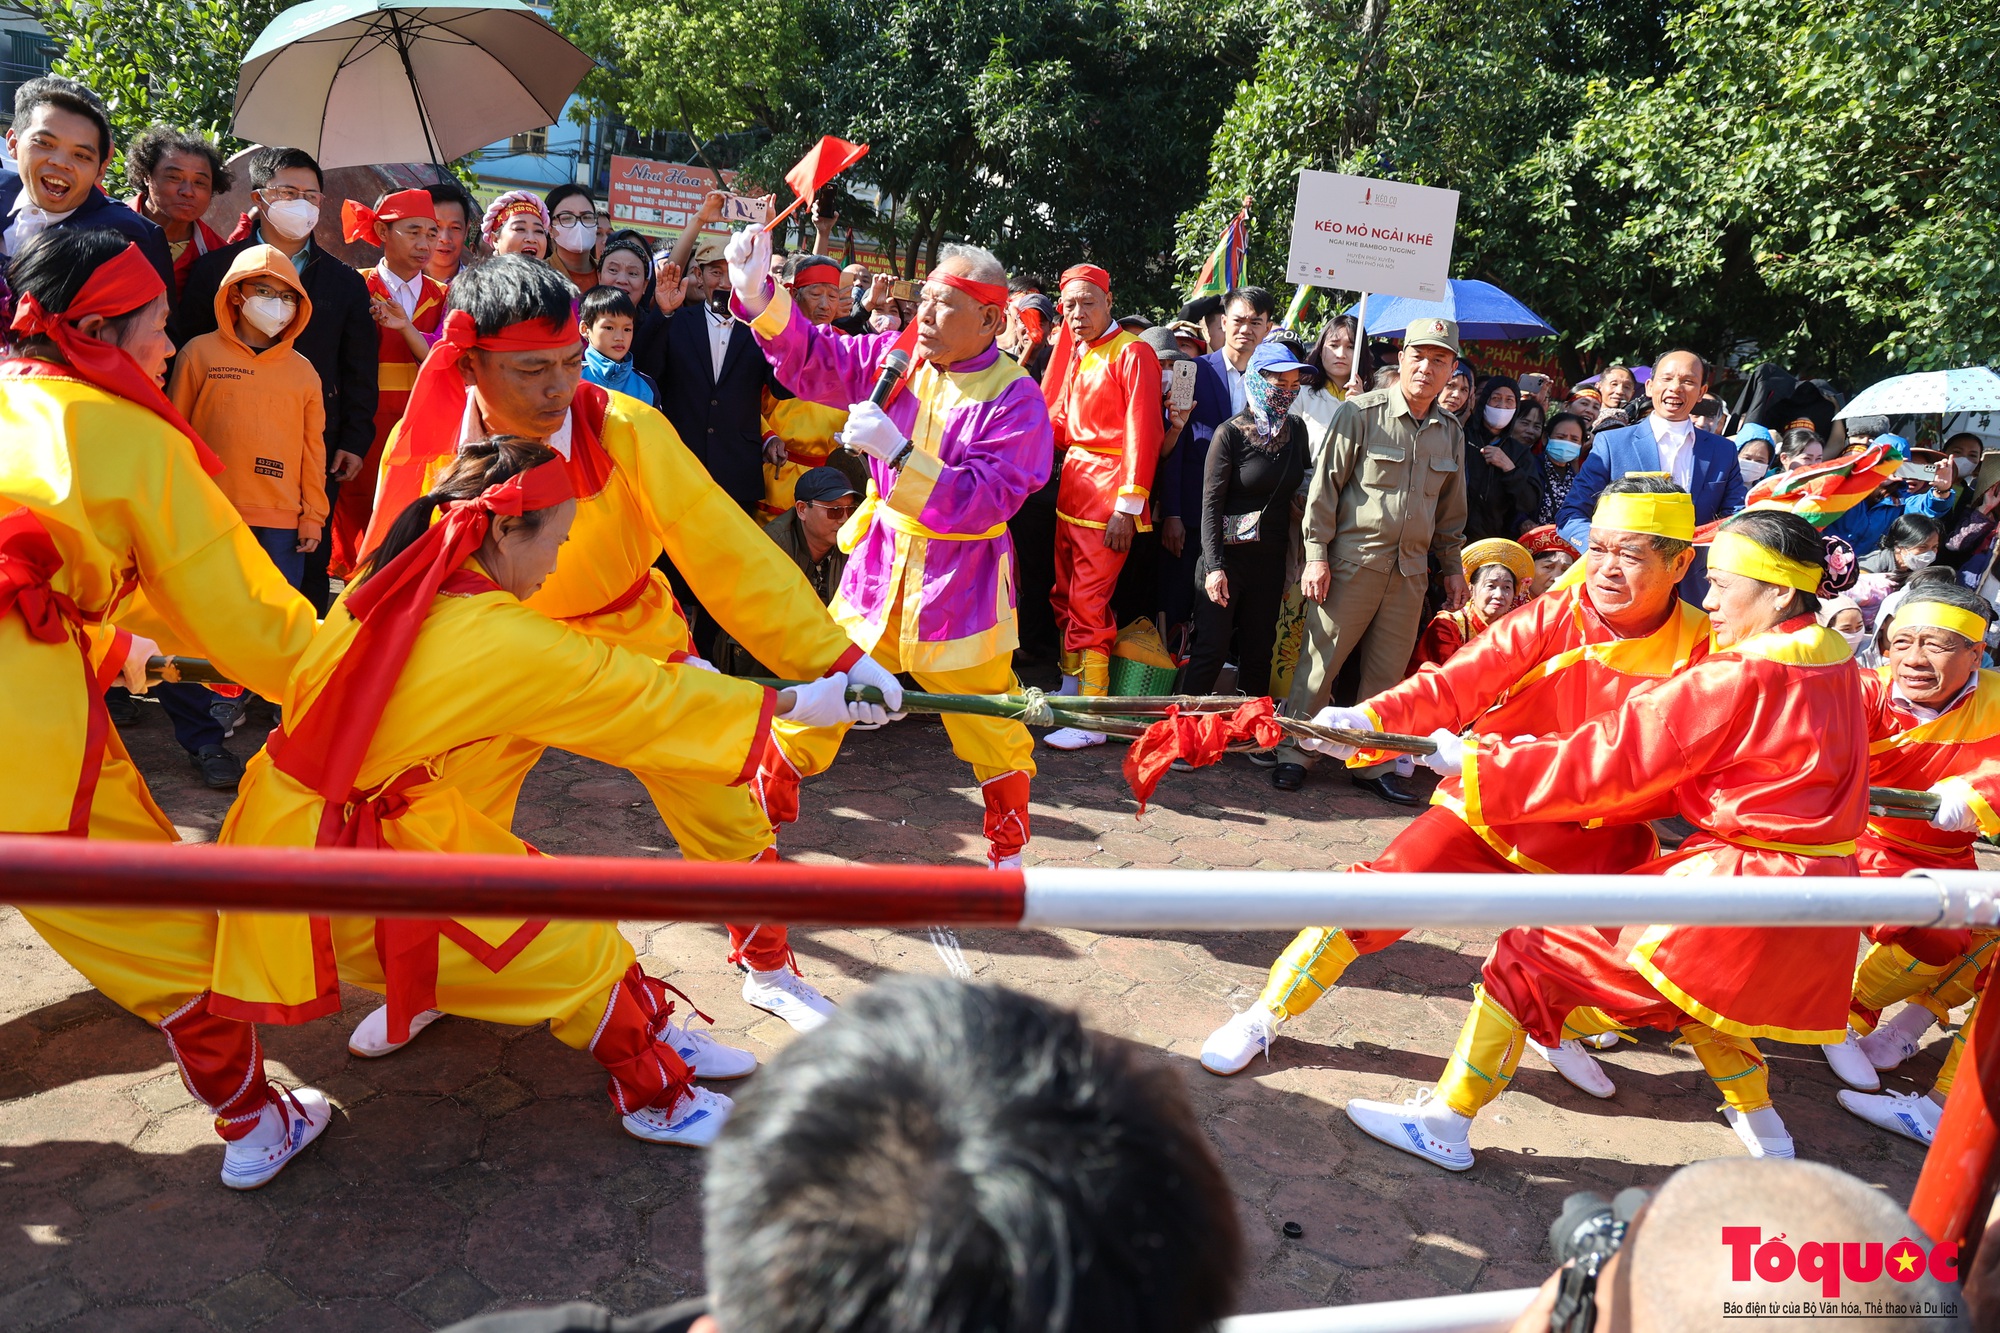 Lần đầu tiên tổ chức liên hoan trình diễn nghi lễ và trò chơi kéo co tại Việt Nam - Ảnh 10.